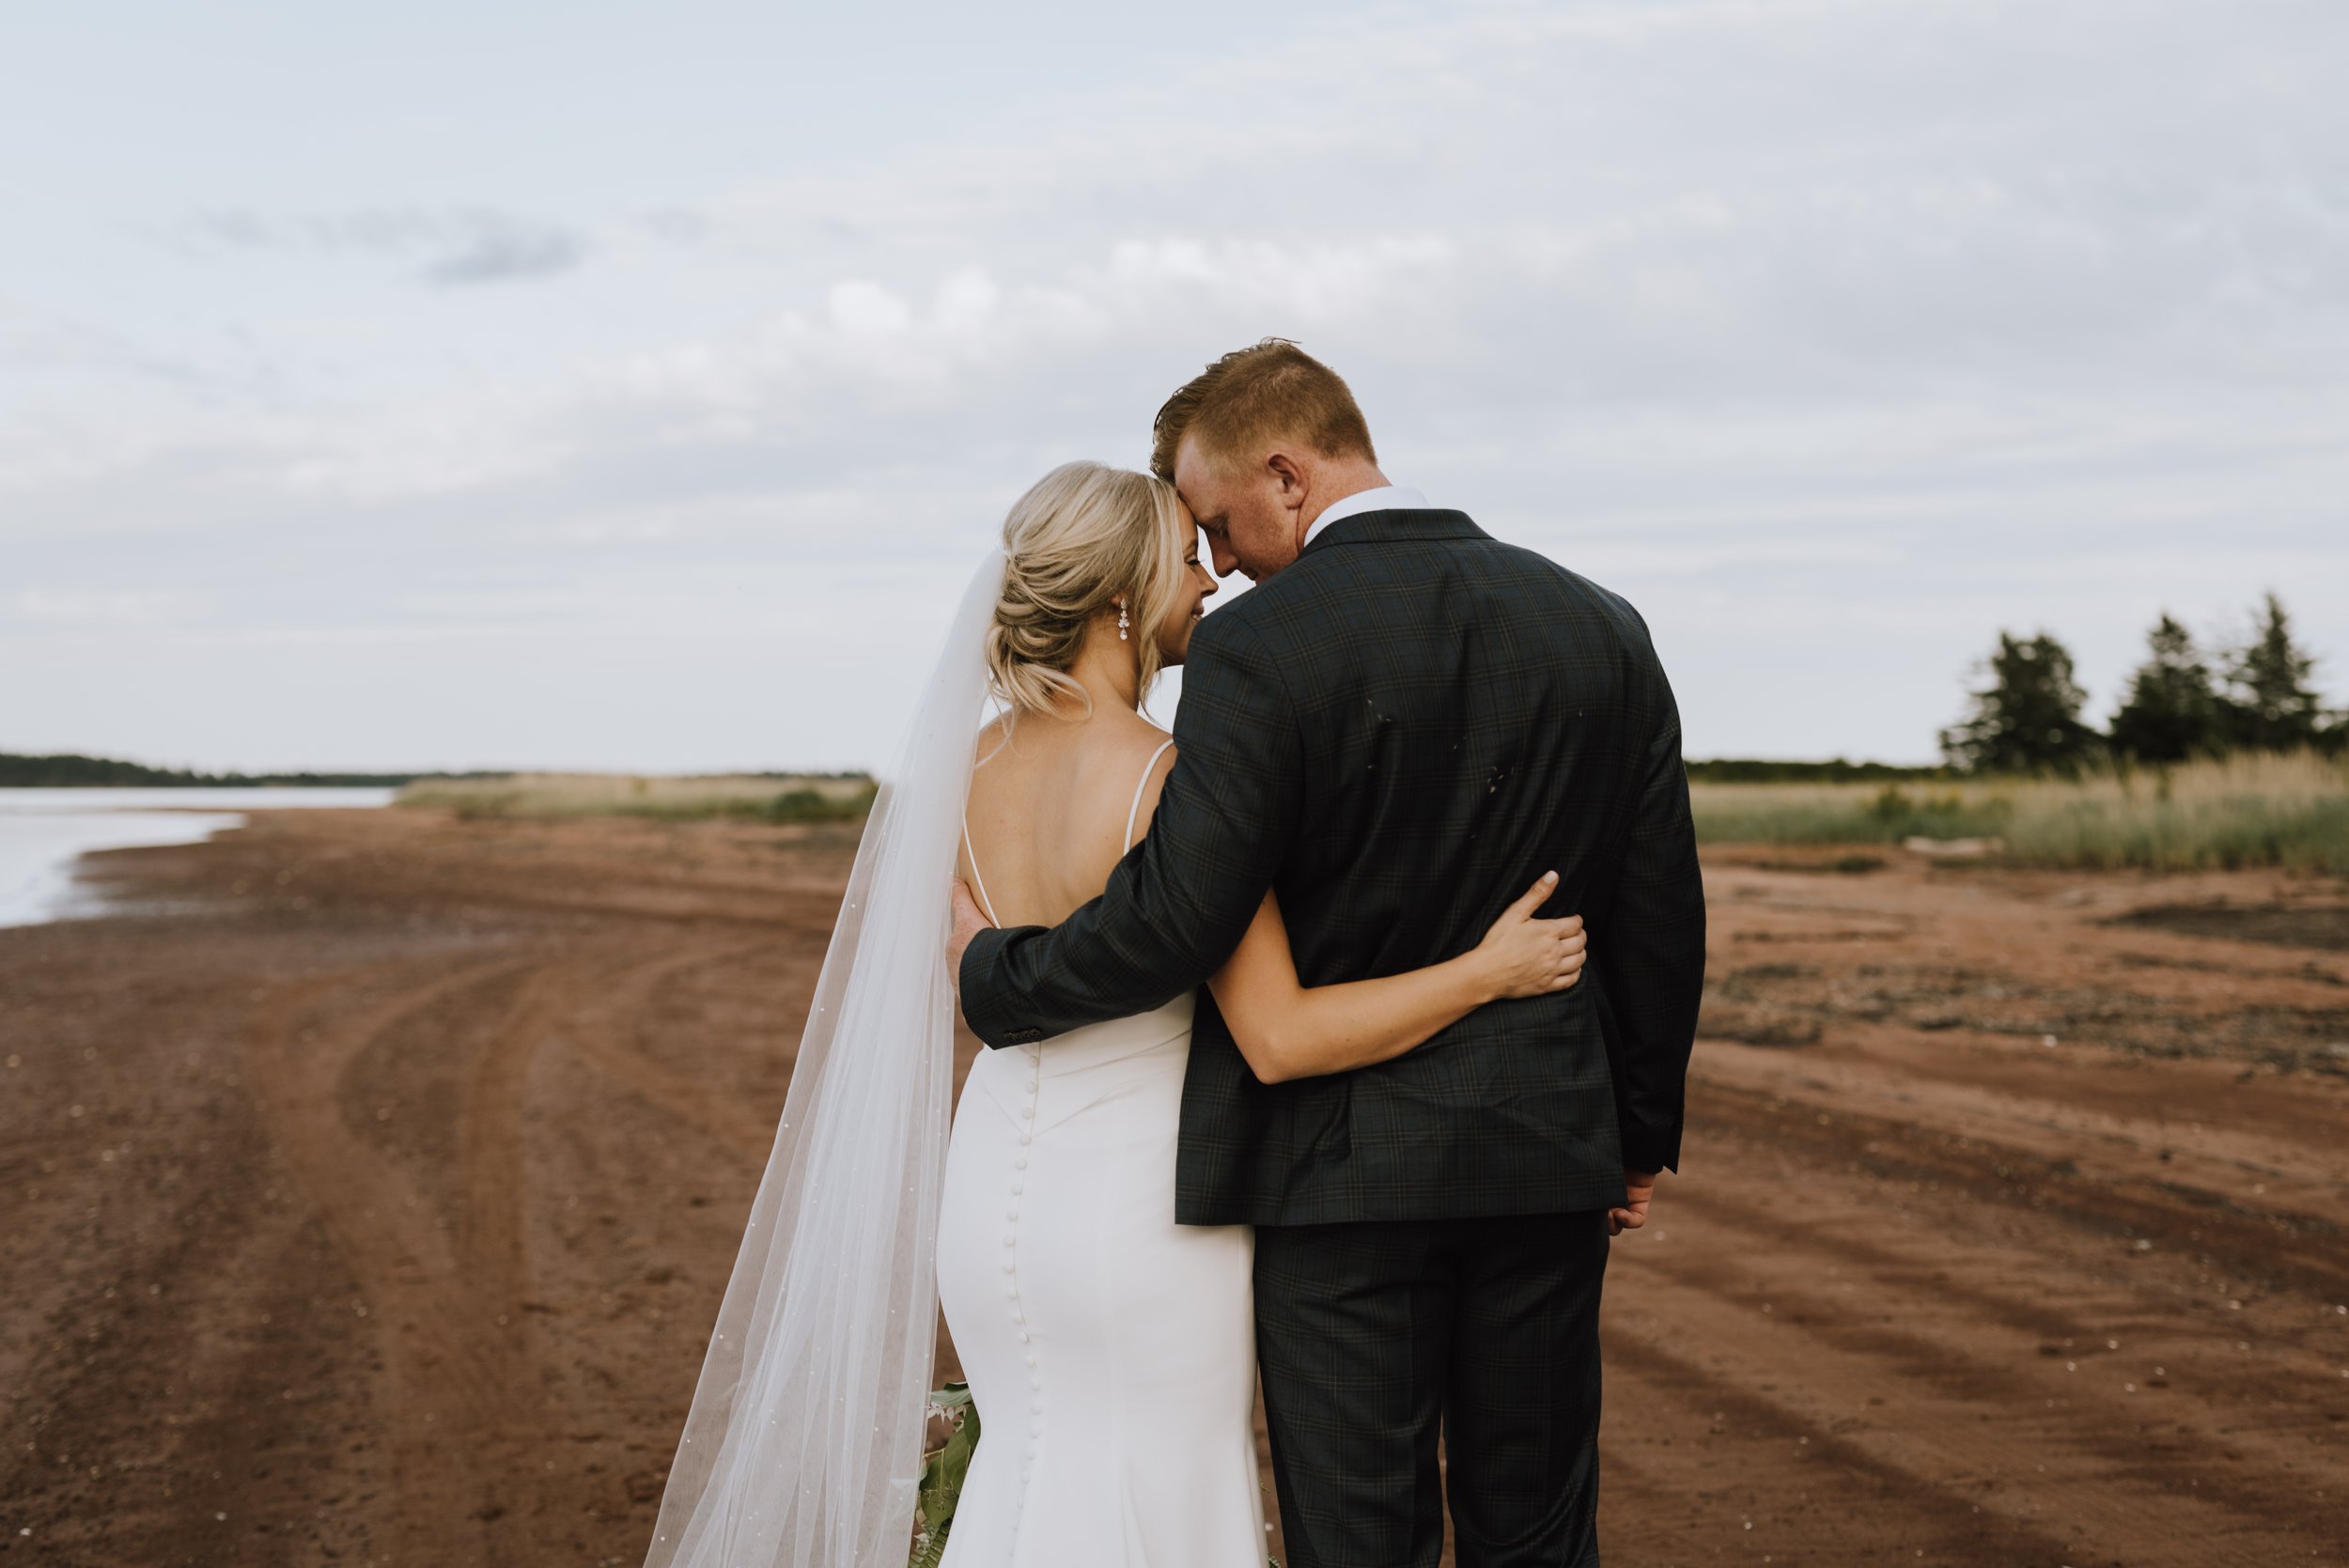 PEI wedding photographer - Michaela Bell Photography